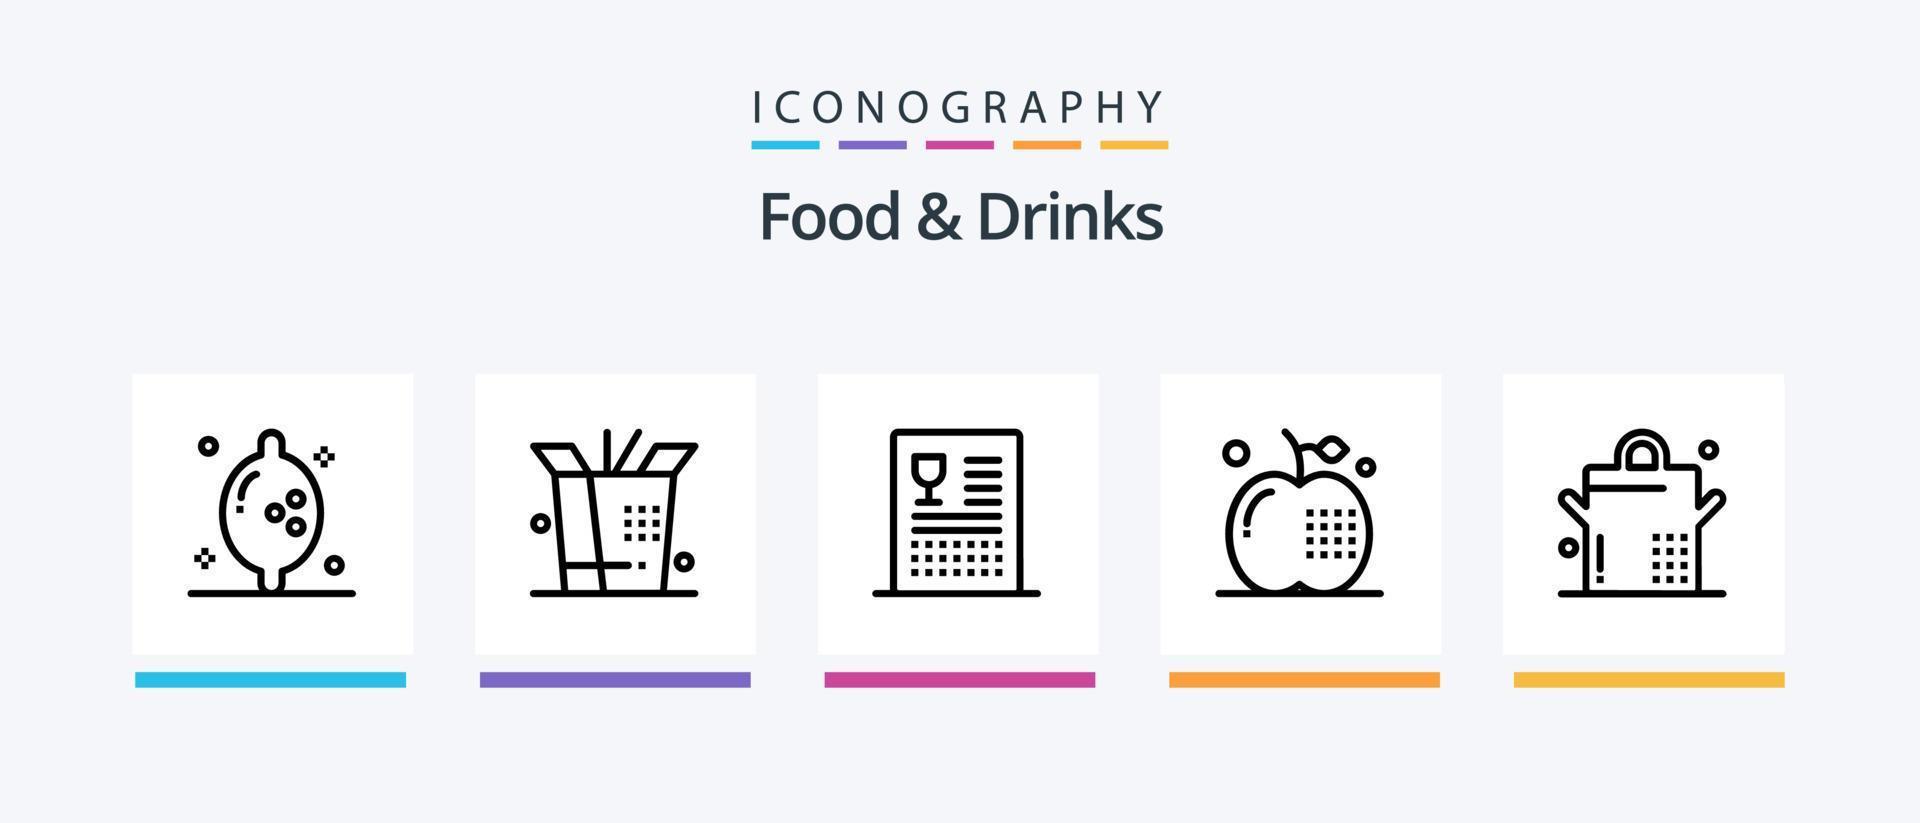 paquete de iconos de la línea 5 de alimentos y bebidas, incluida la cocina. alimento. manzana. come. comida. diseño de iconos creativos vector